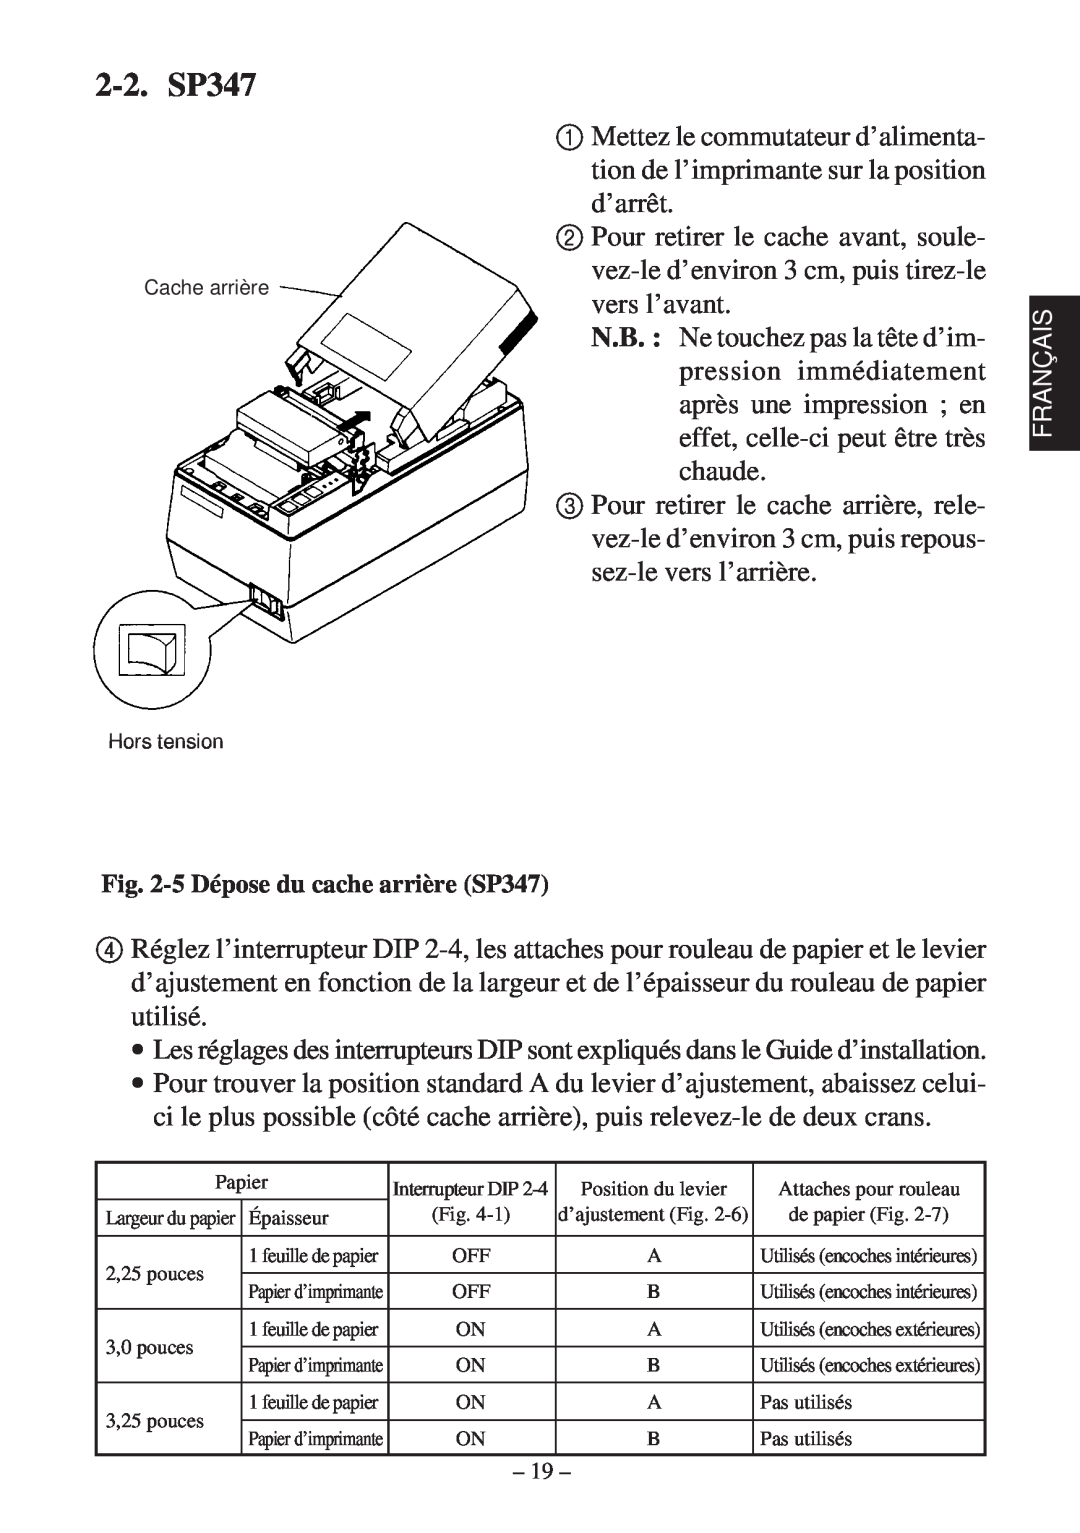 Star Micronics 347F user manual 2-2. SP347, 5 Dépose du cache arrière SP347, Cache arrière, Hors tension 